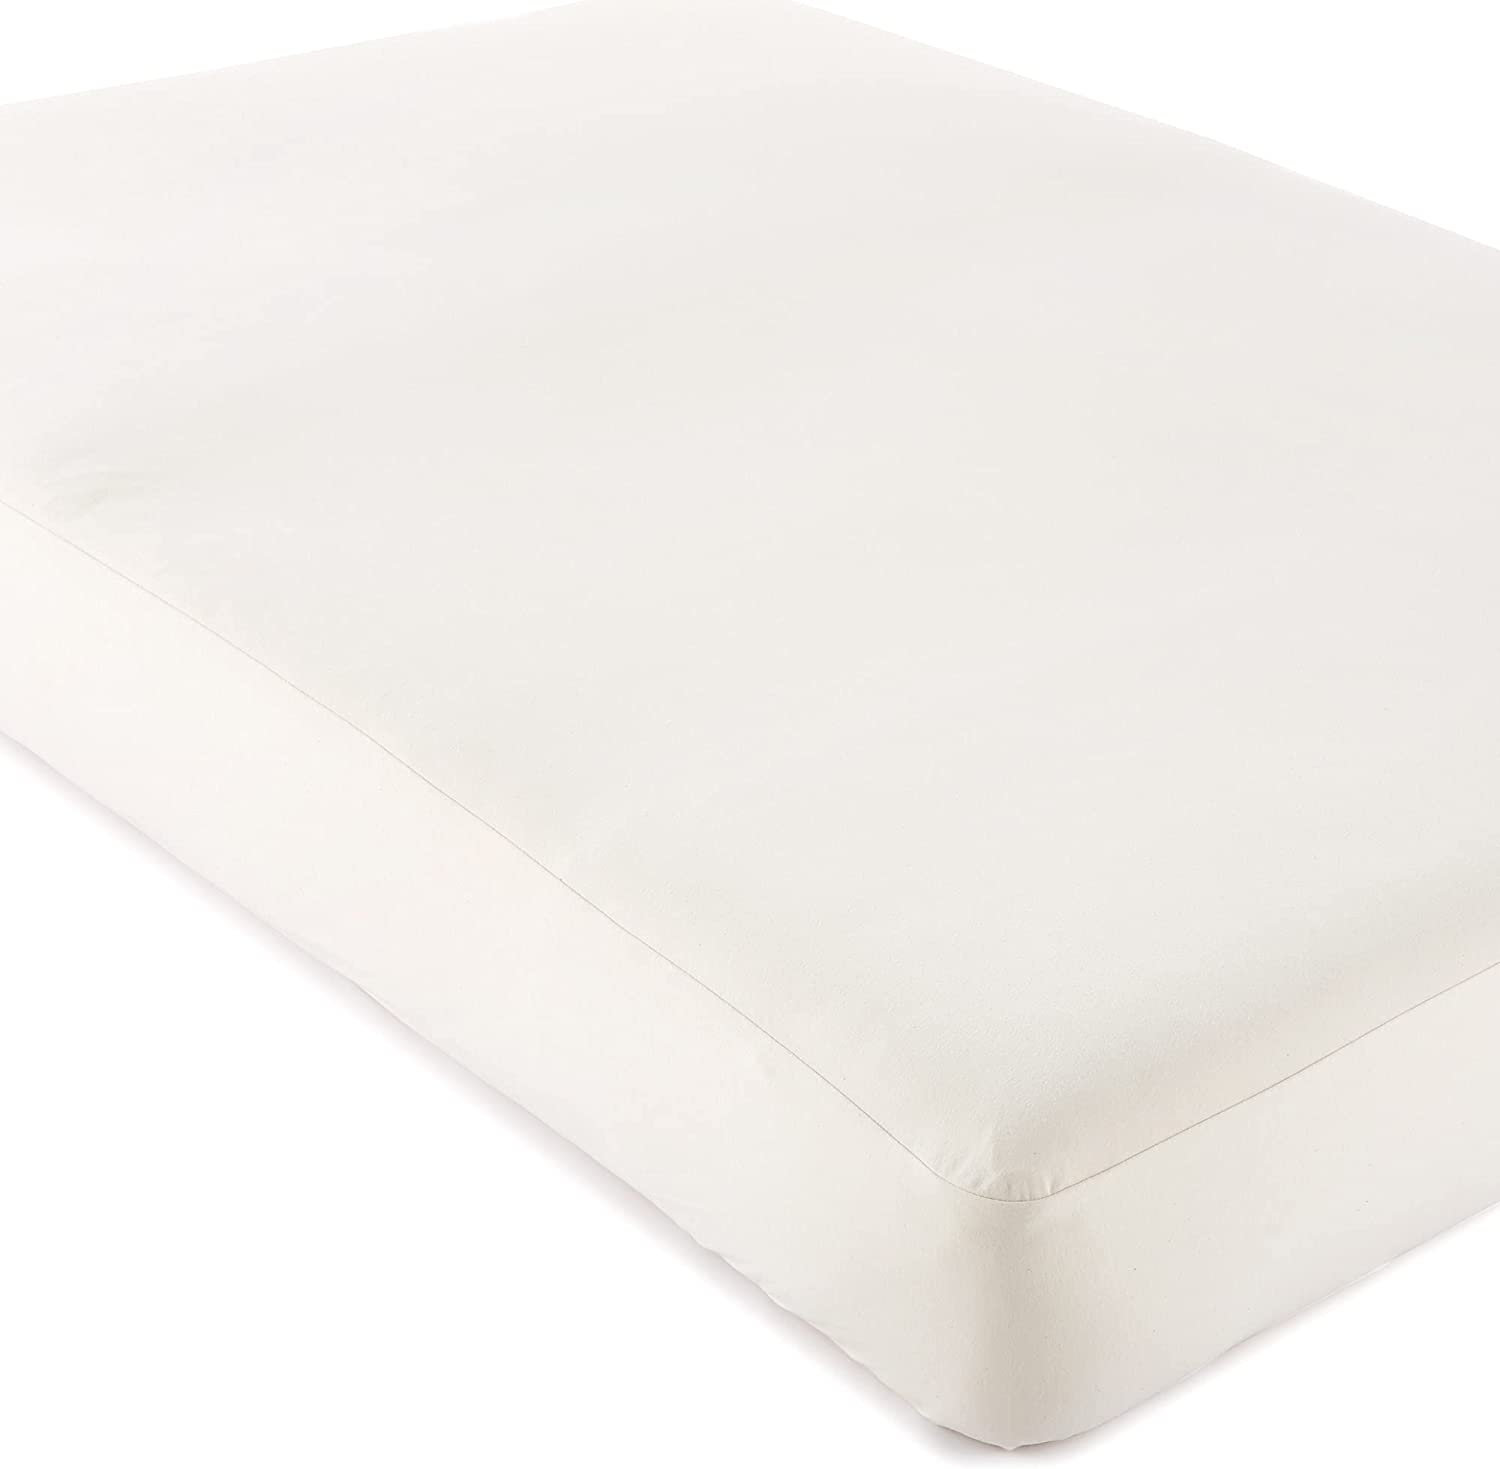 https://assets.wfcdn.com/im/62366165/compr-r85/2352/235203051/waterproof-fitted-mattress-protector-mattress-protector-case-pack.jpg